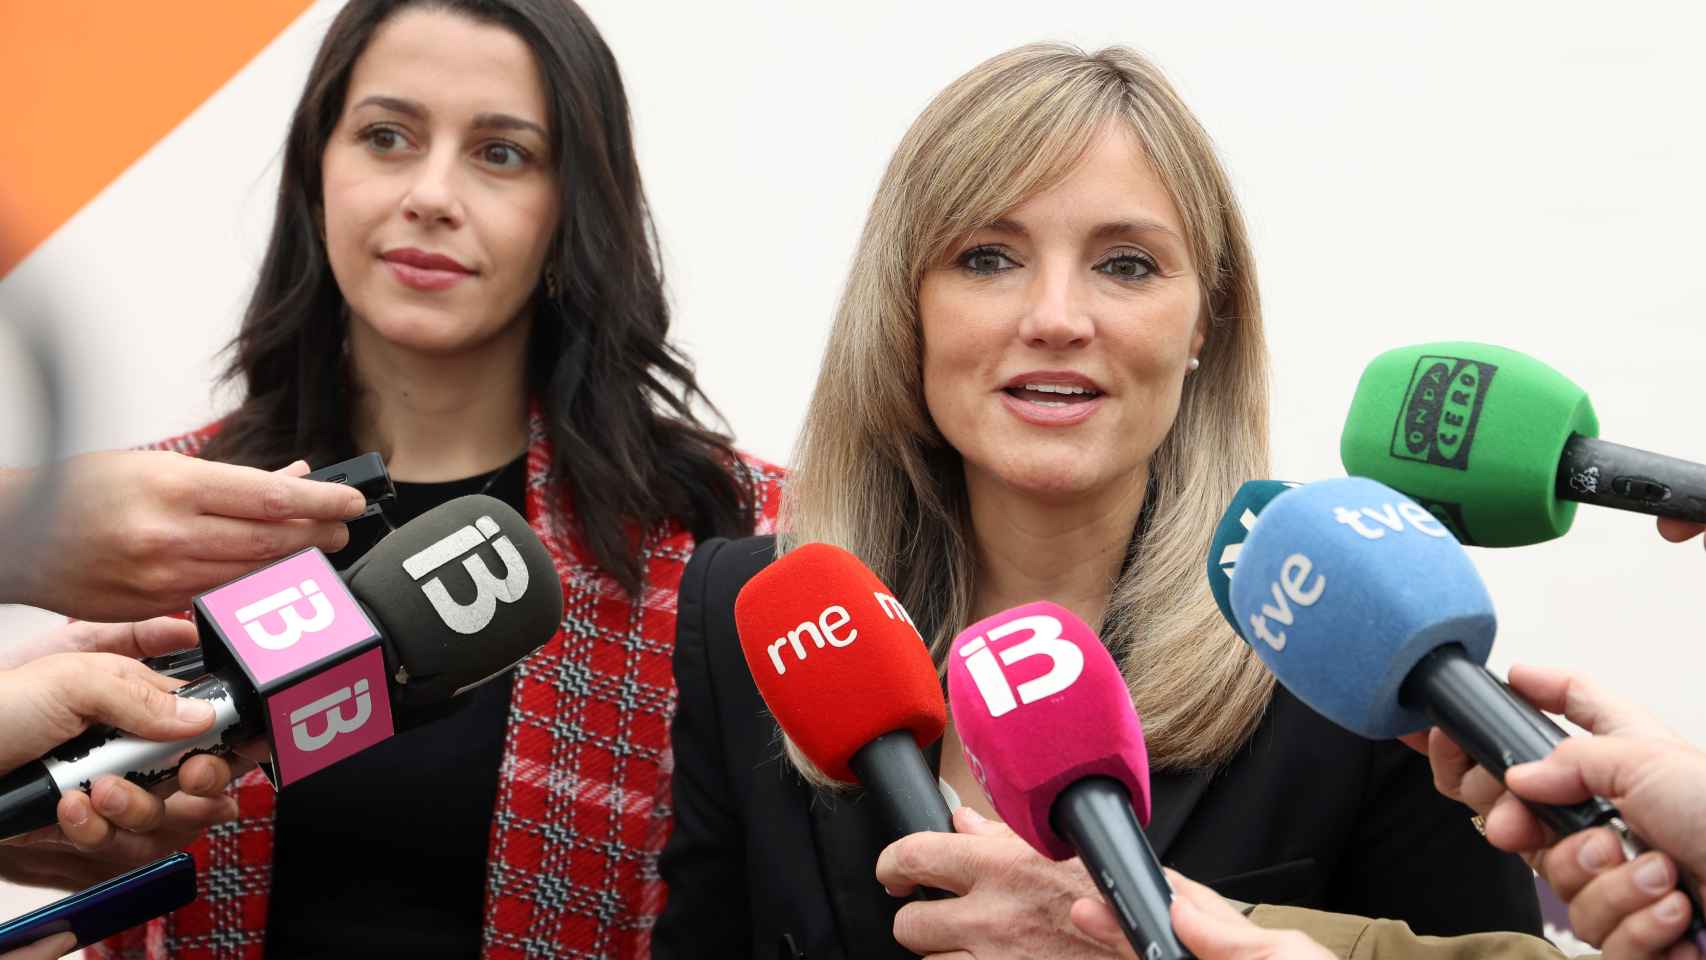 La coordinadora y portavoz de Ciudadanos Baleares, Patricia Guasp, atiende a los medios junto a Inés Arrimadas.